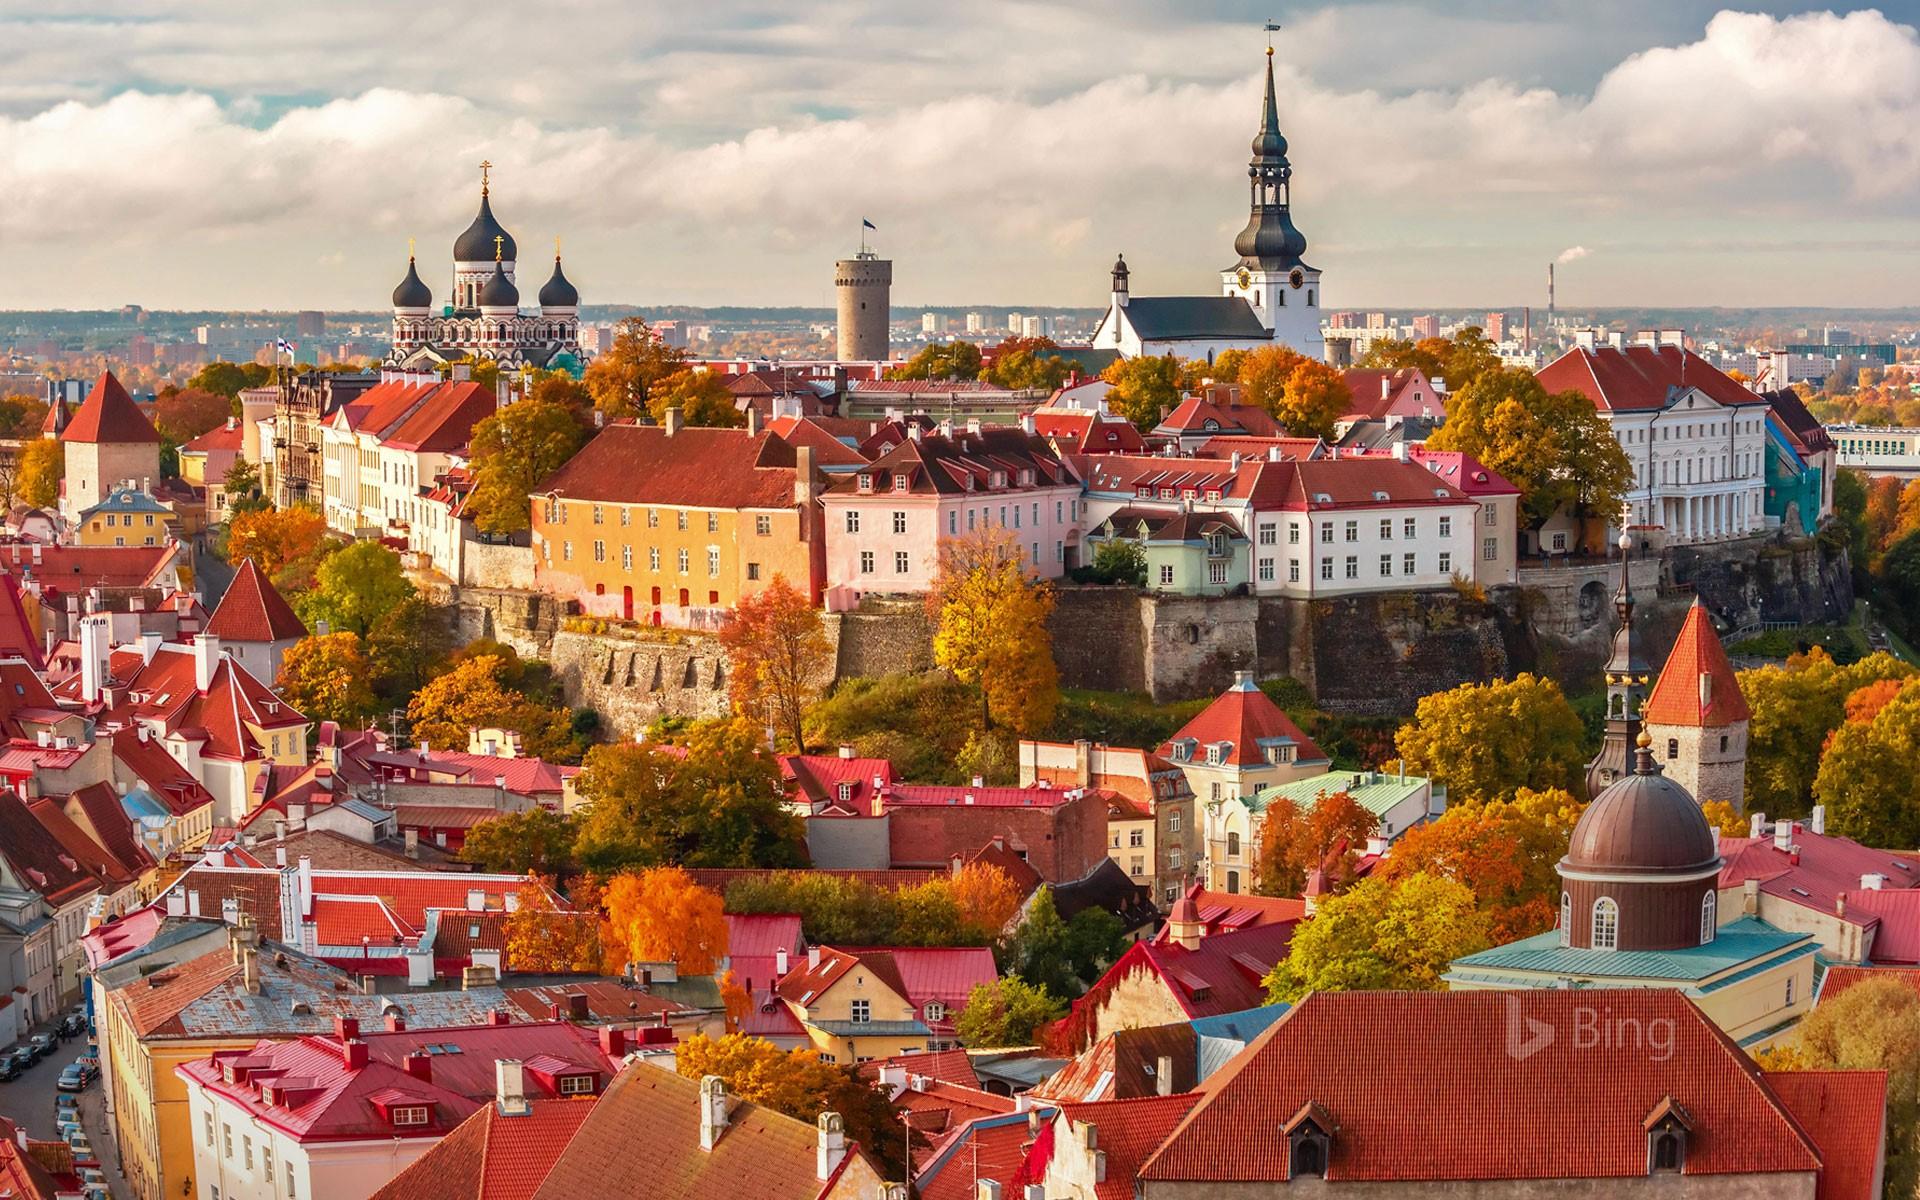 Old Town Of Tallinn, Estonia (© Kavalenkava Volha Alamy)